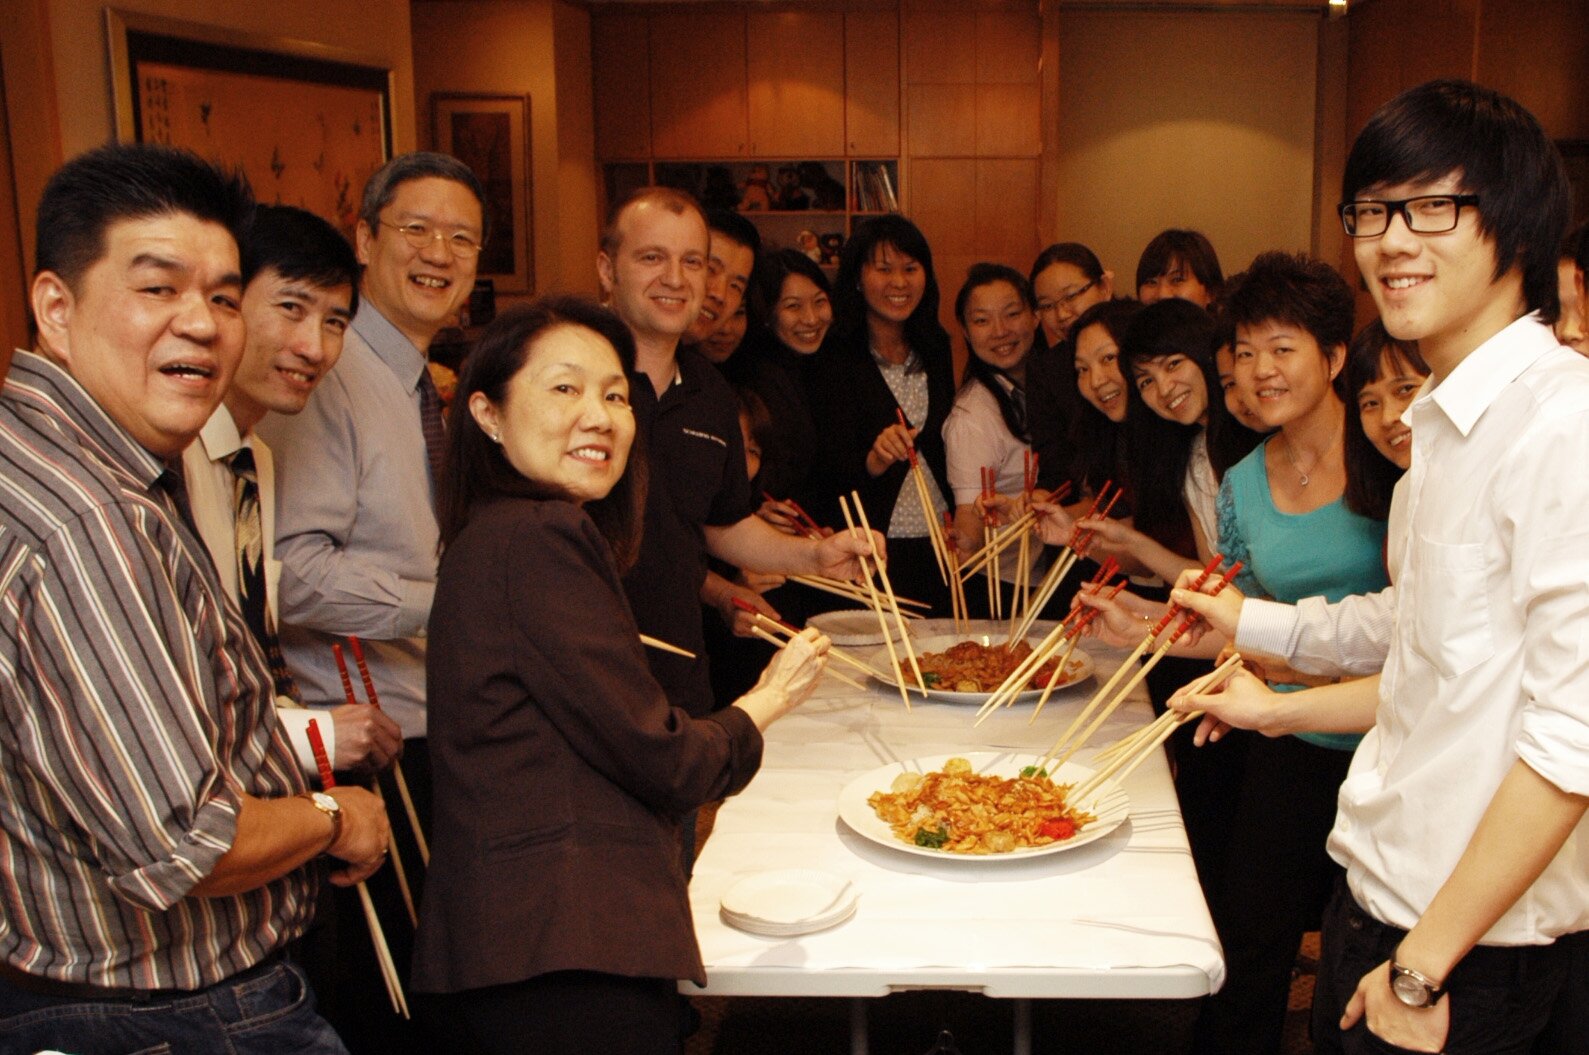 Dr. Jerry Tan, sein Team und der der SCHWIND Service-Techniker Alex Schroeck feiern gemeinsam das chinesische Neujahrsfest